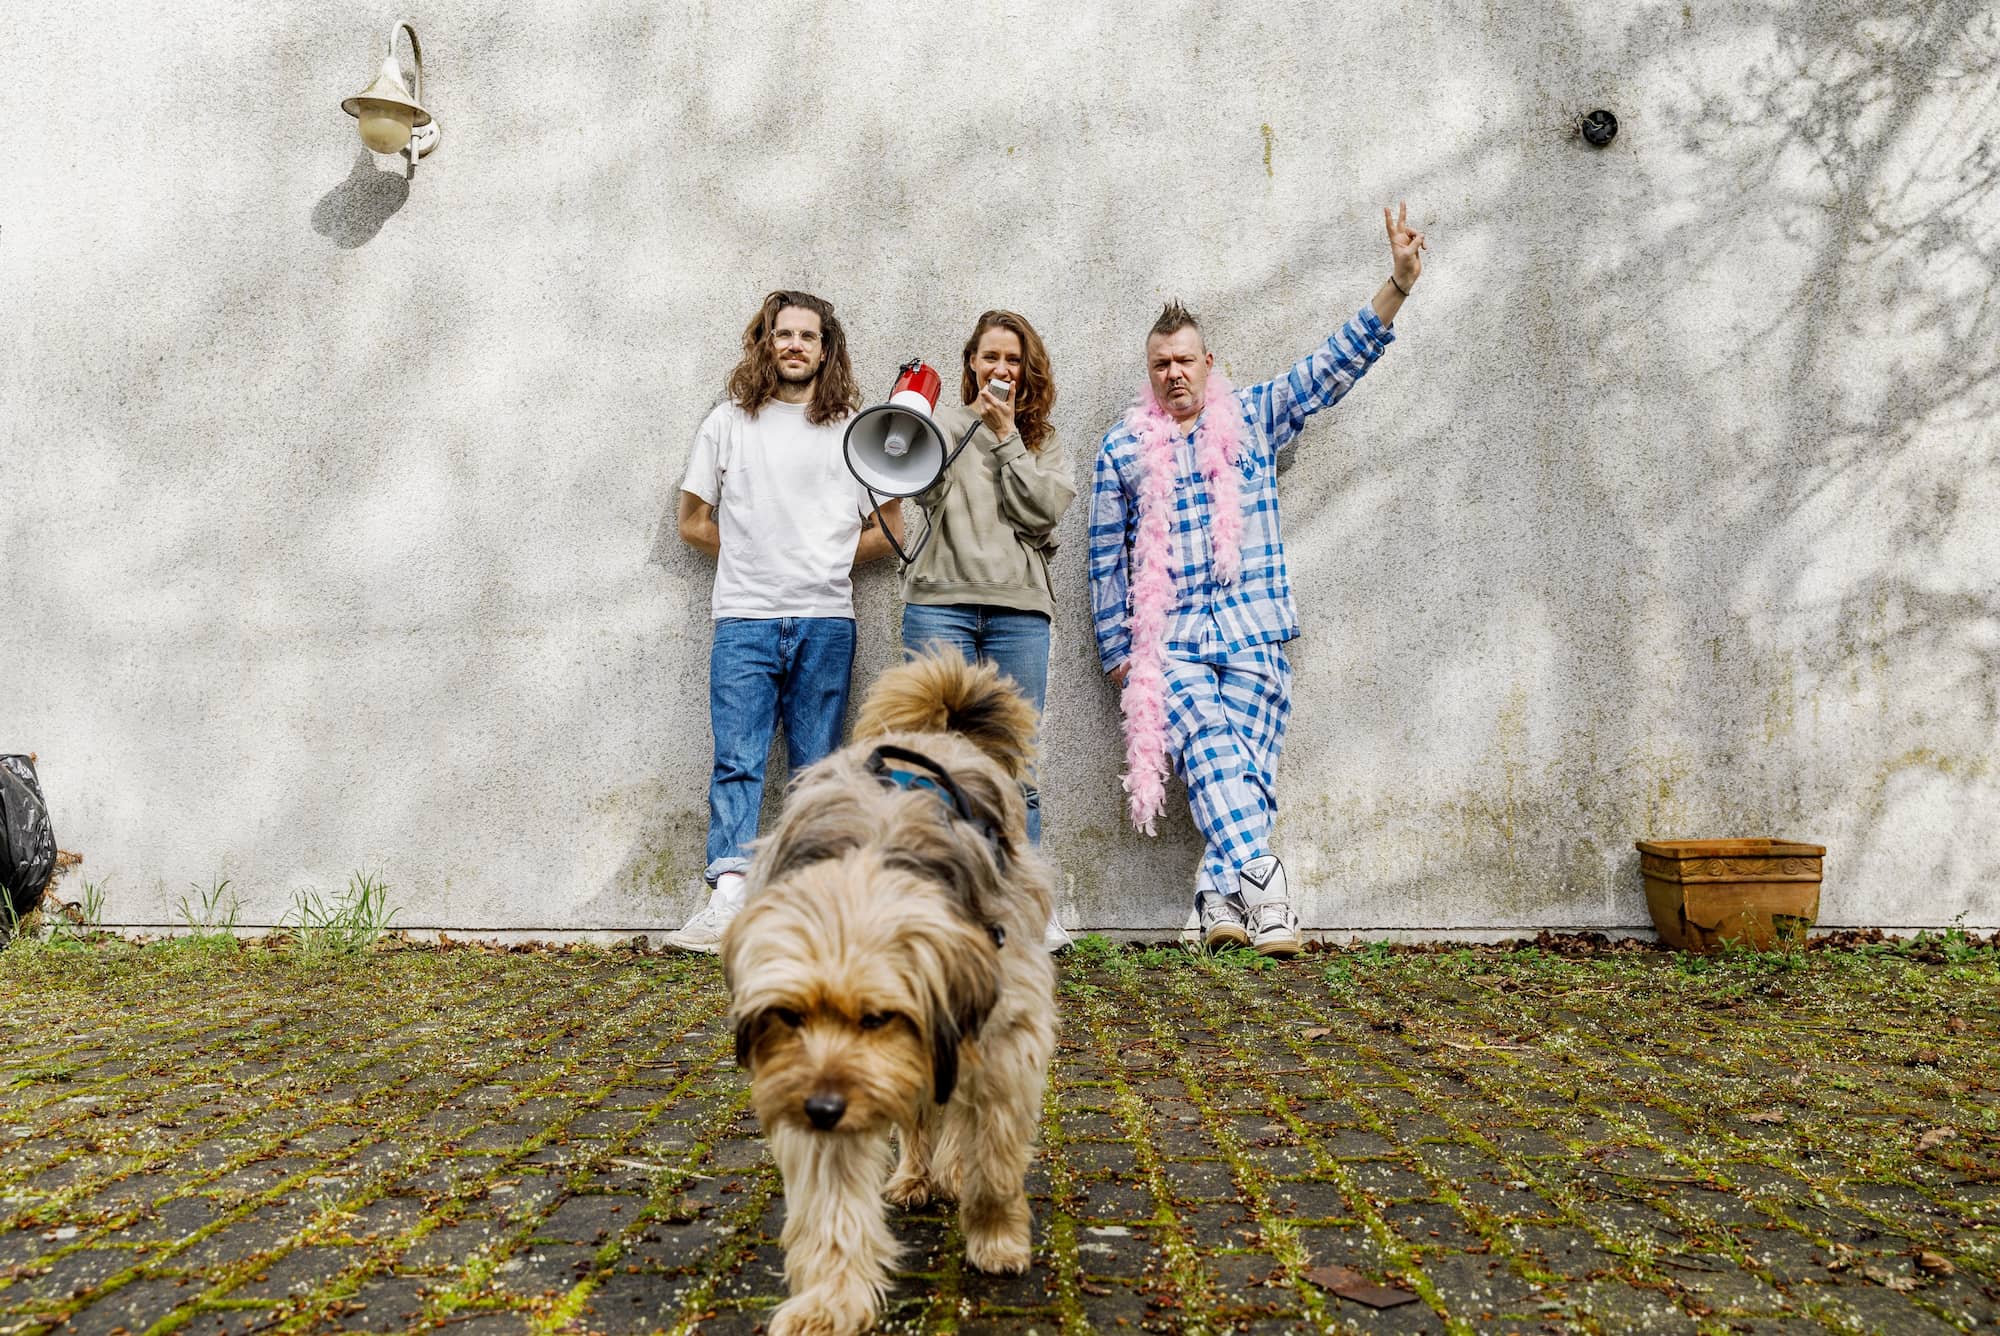 Bandfoto Fortuna Ehrenfeld, die drei Bandmitglieder lehnen an einer weißen Hauswand. Die Person in der Mitte spricht in ein Megafon. Vor der Band steht ein Hund.